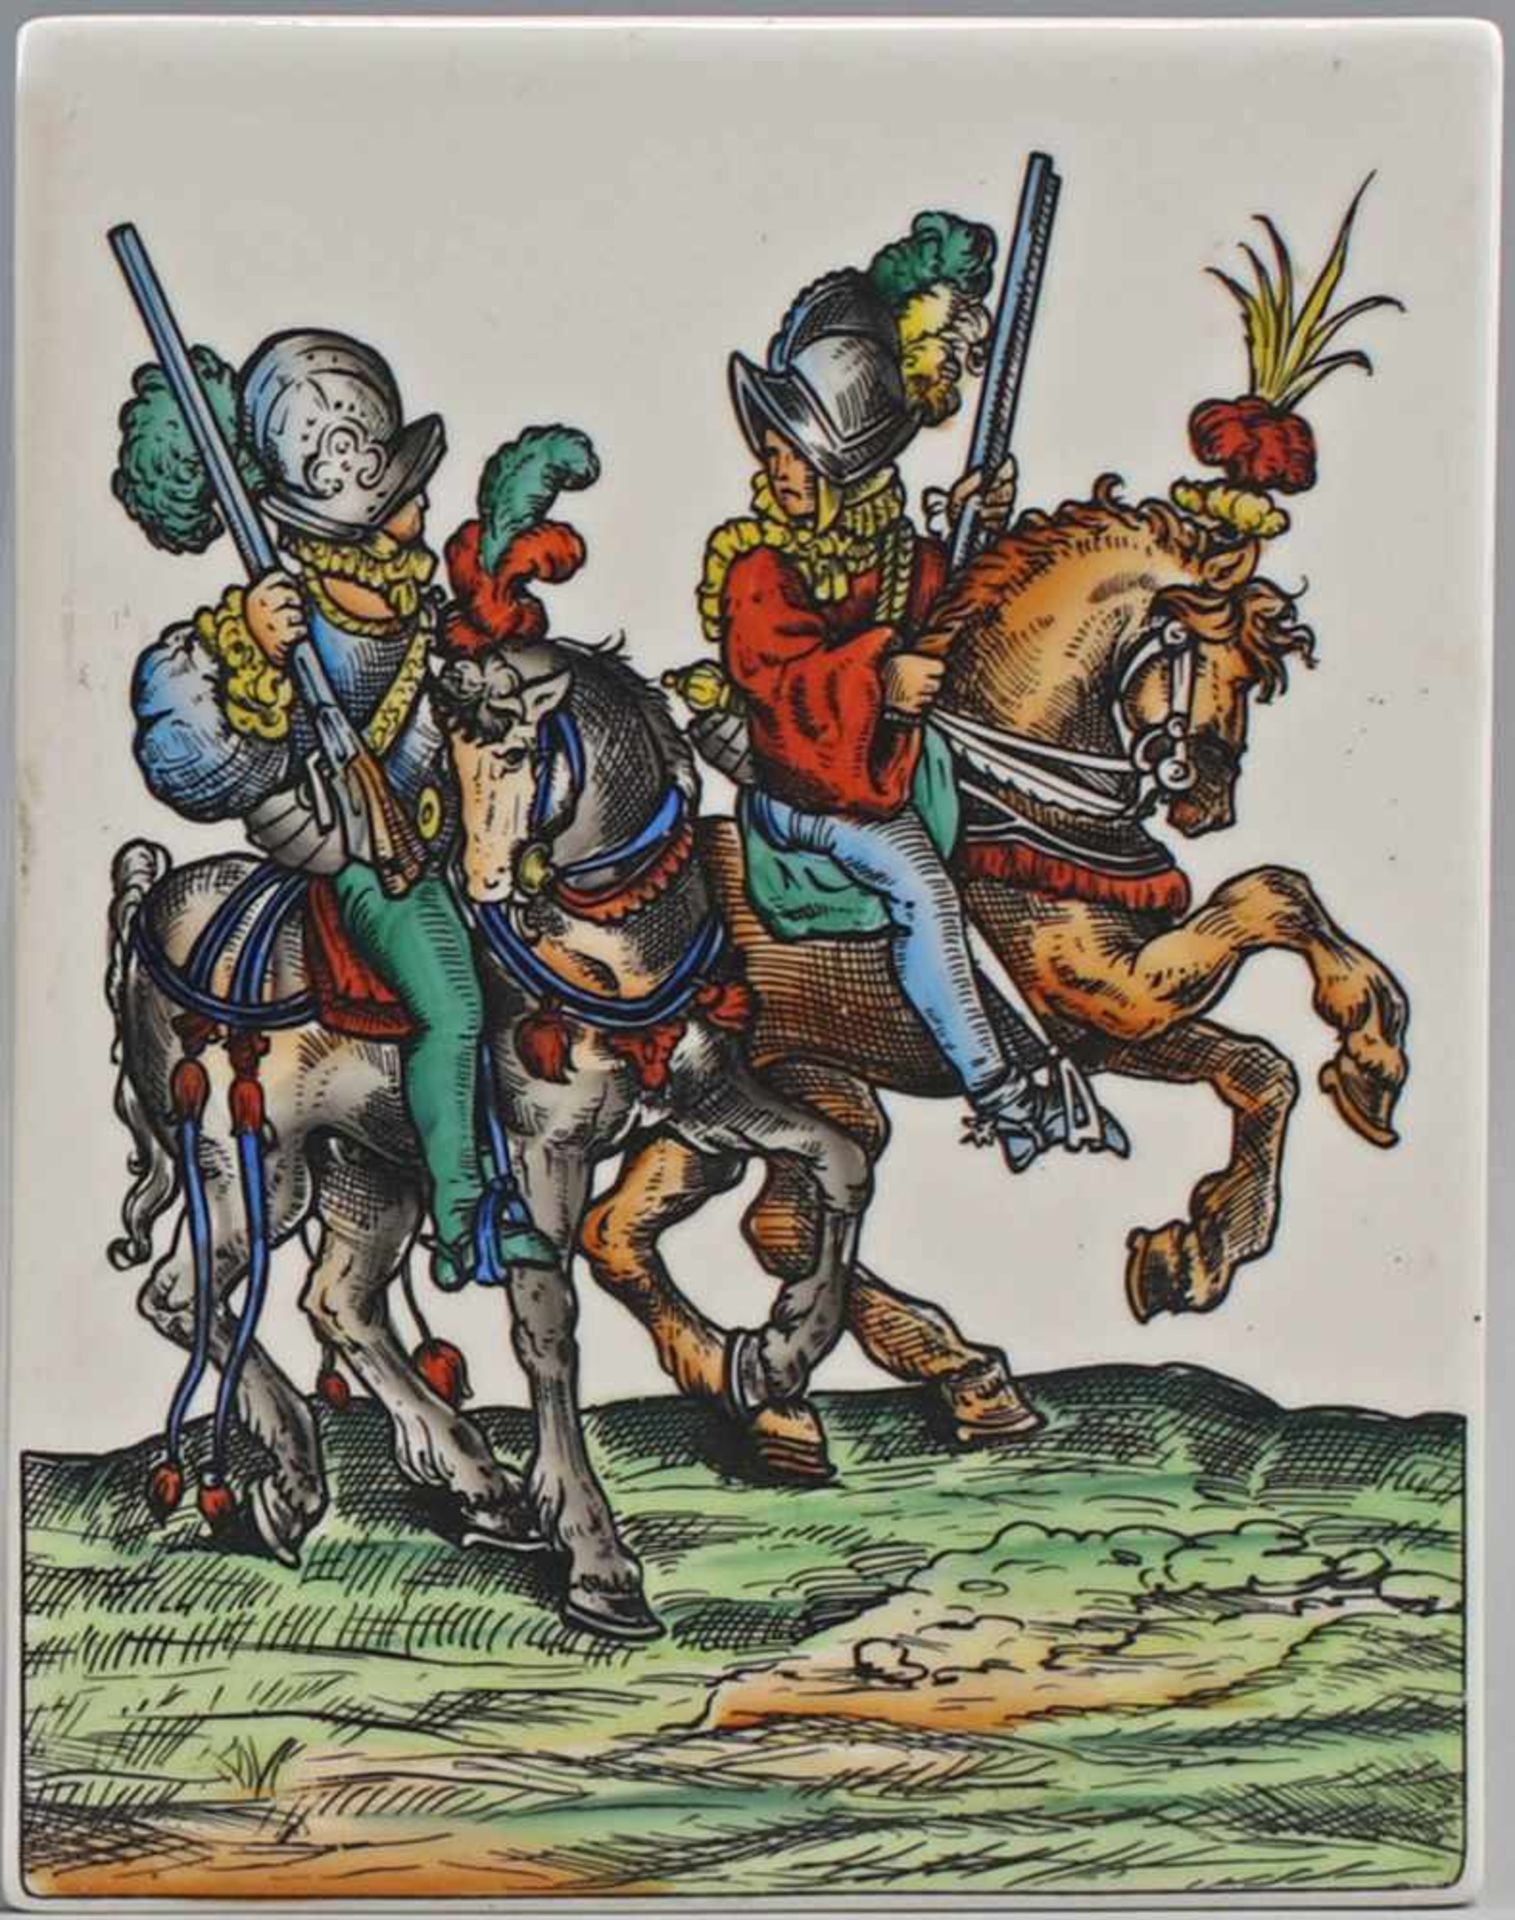 Porzellan-Bildplatte Reiter ungemarkt, handausgemalte Darstellung zweier Reiter zu Pferd, 22 x 28